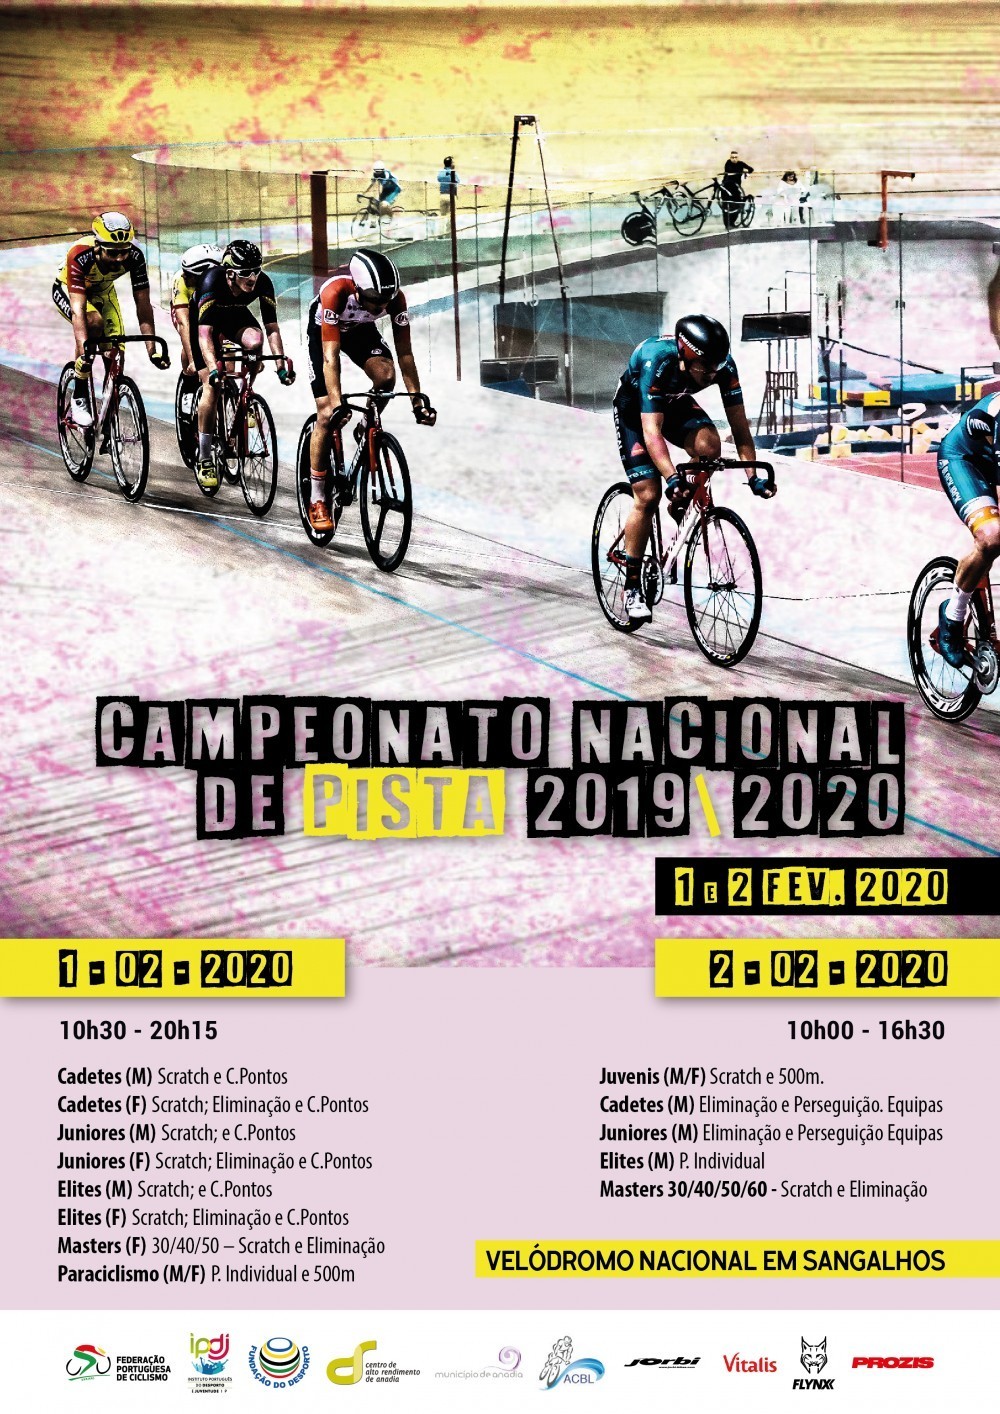 Campeonato Nacional de Pista 2019/2020